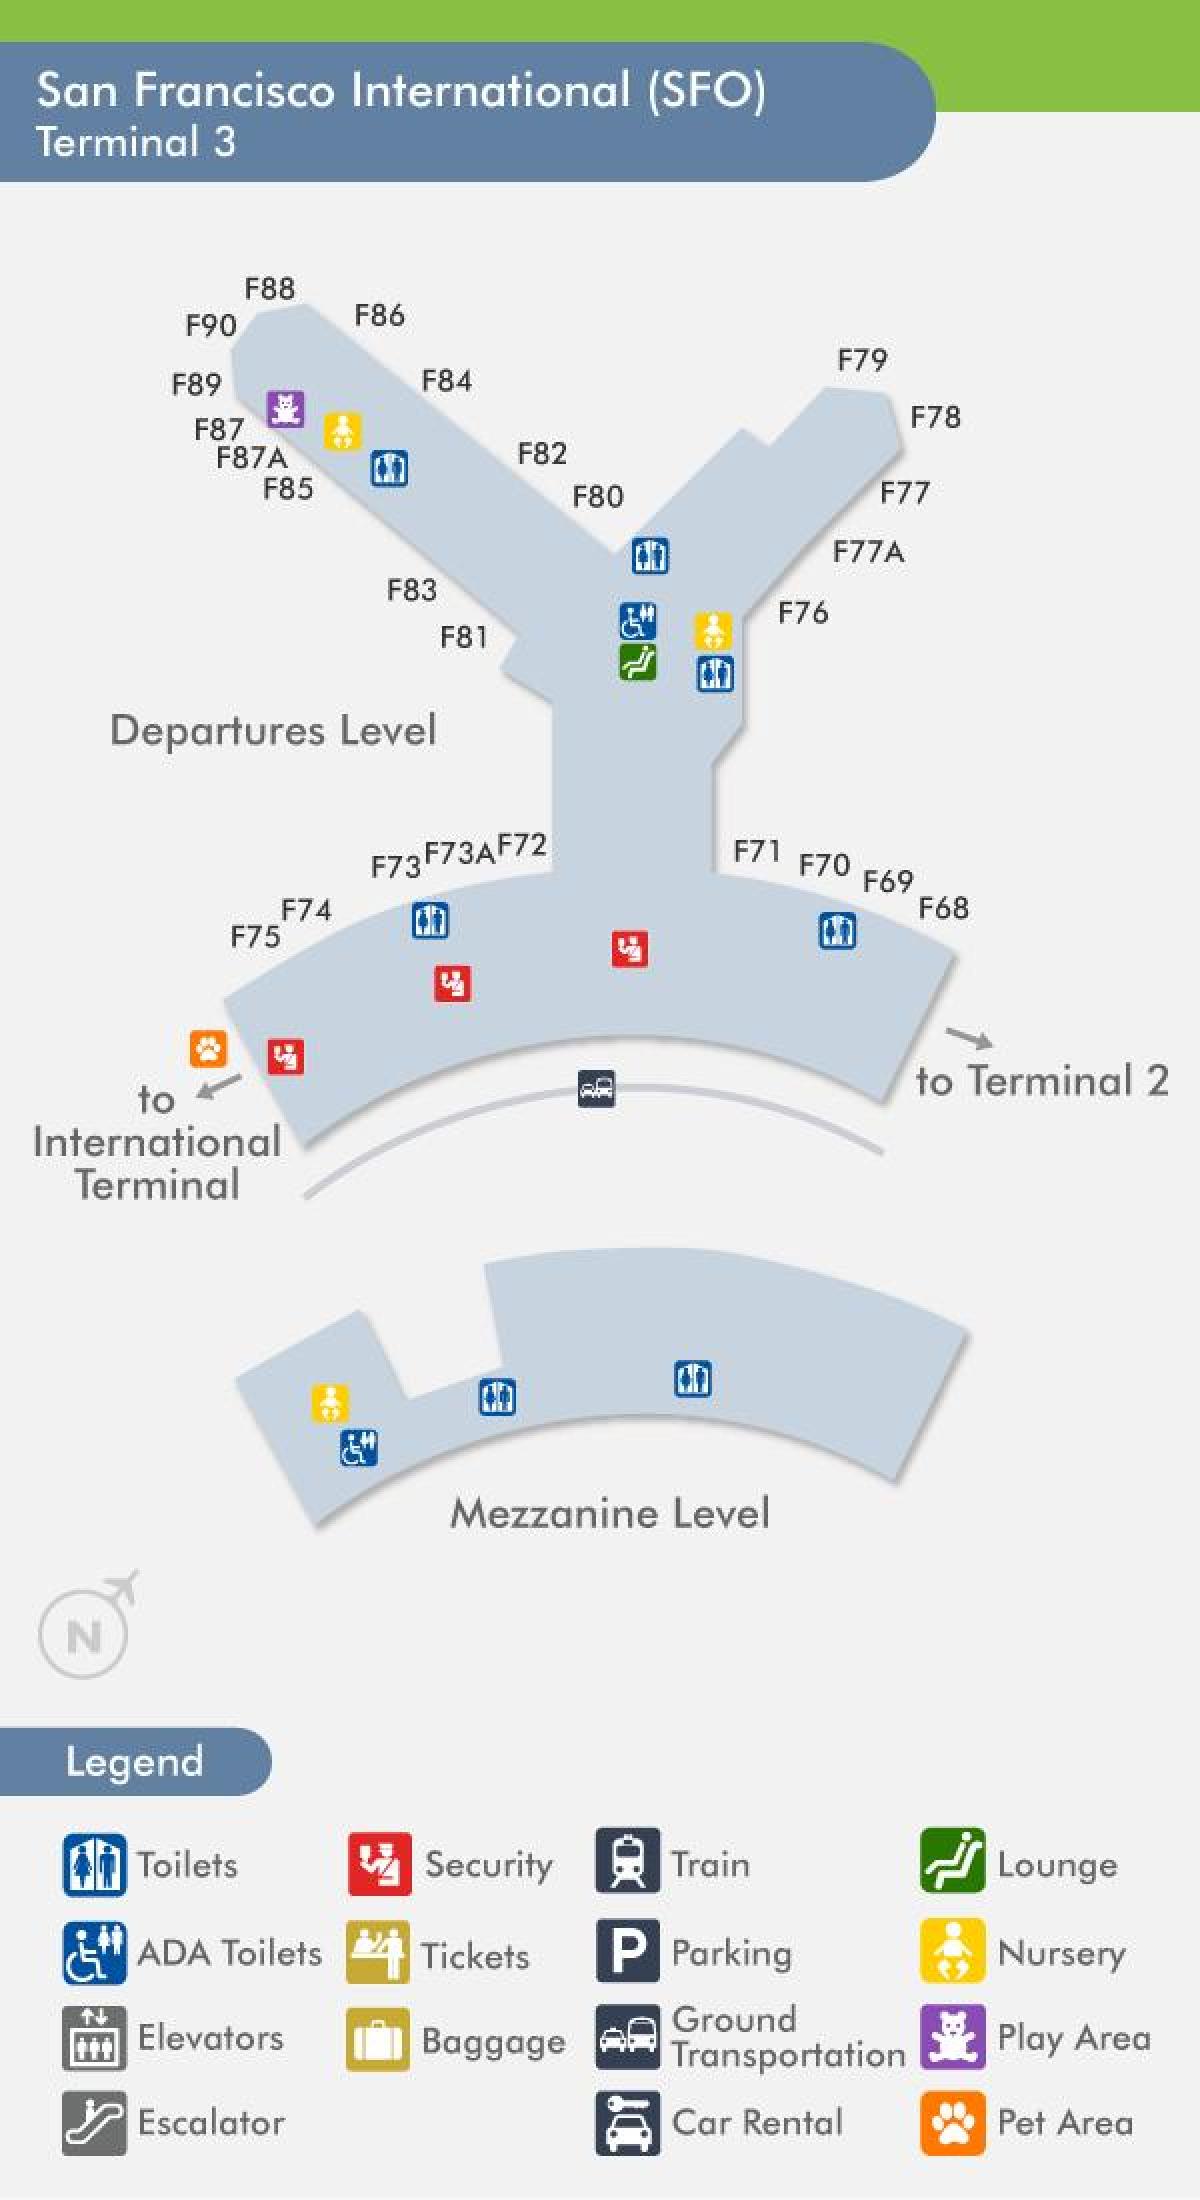 SFO airport χάρτης terminal 3